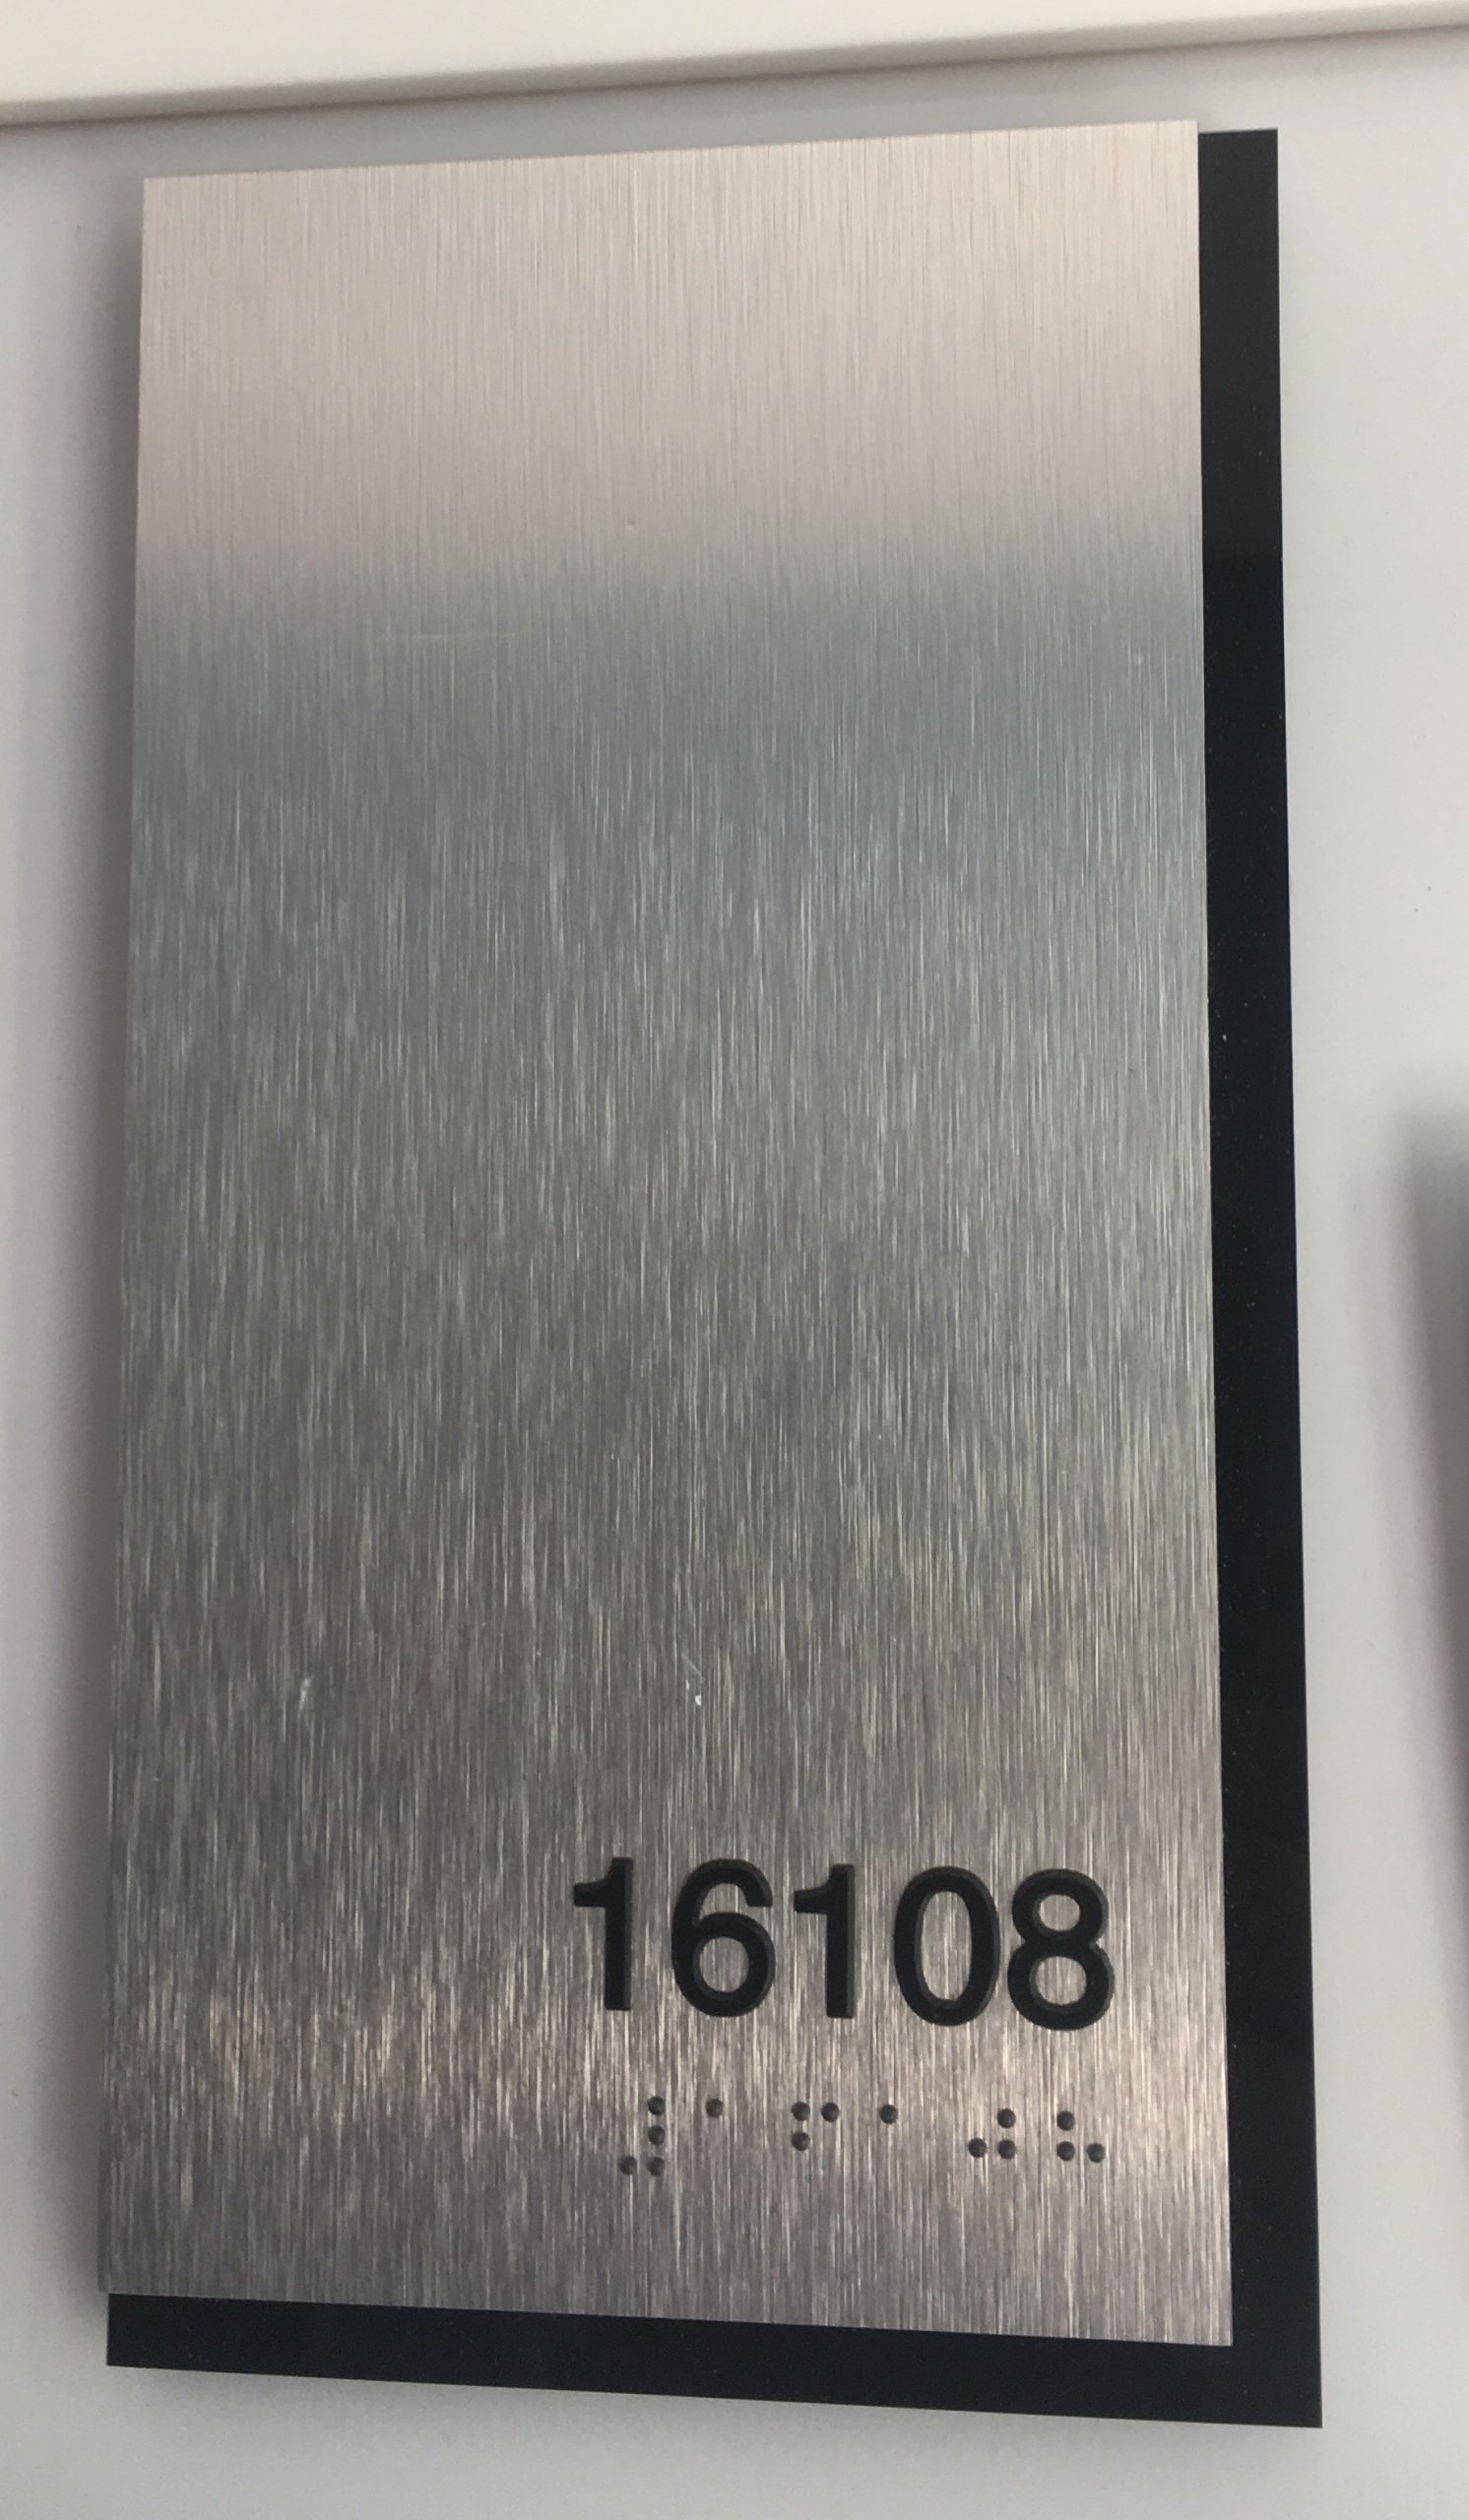 Brushed Aluminum ADA Unit ID with black acrylic backer